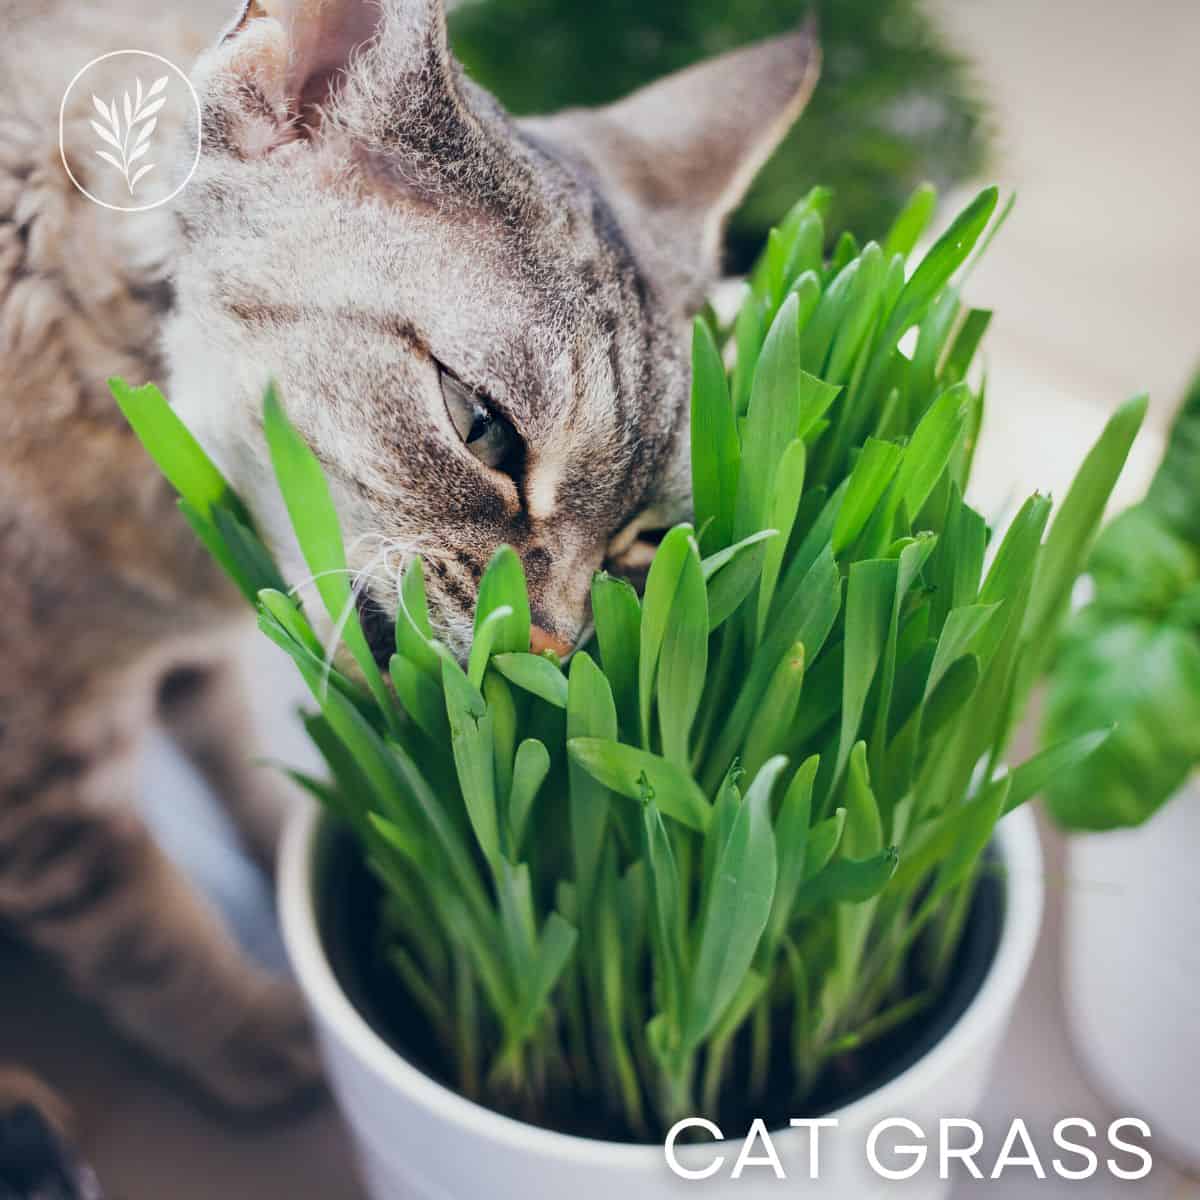 Cat grass via @home4theharvest